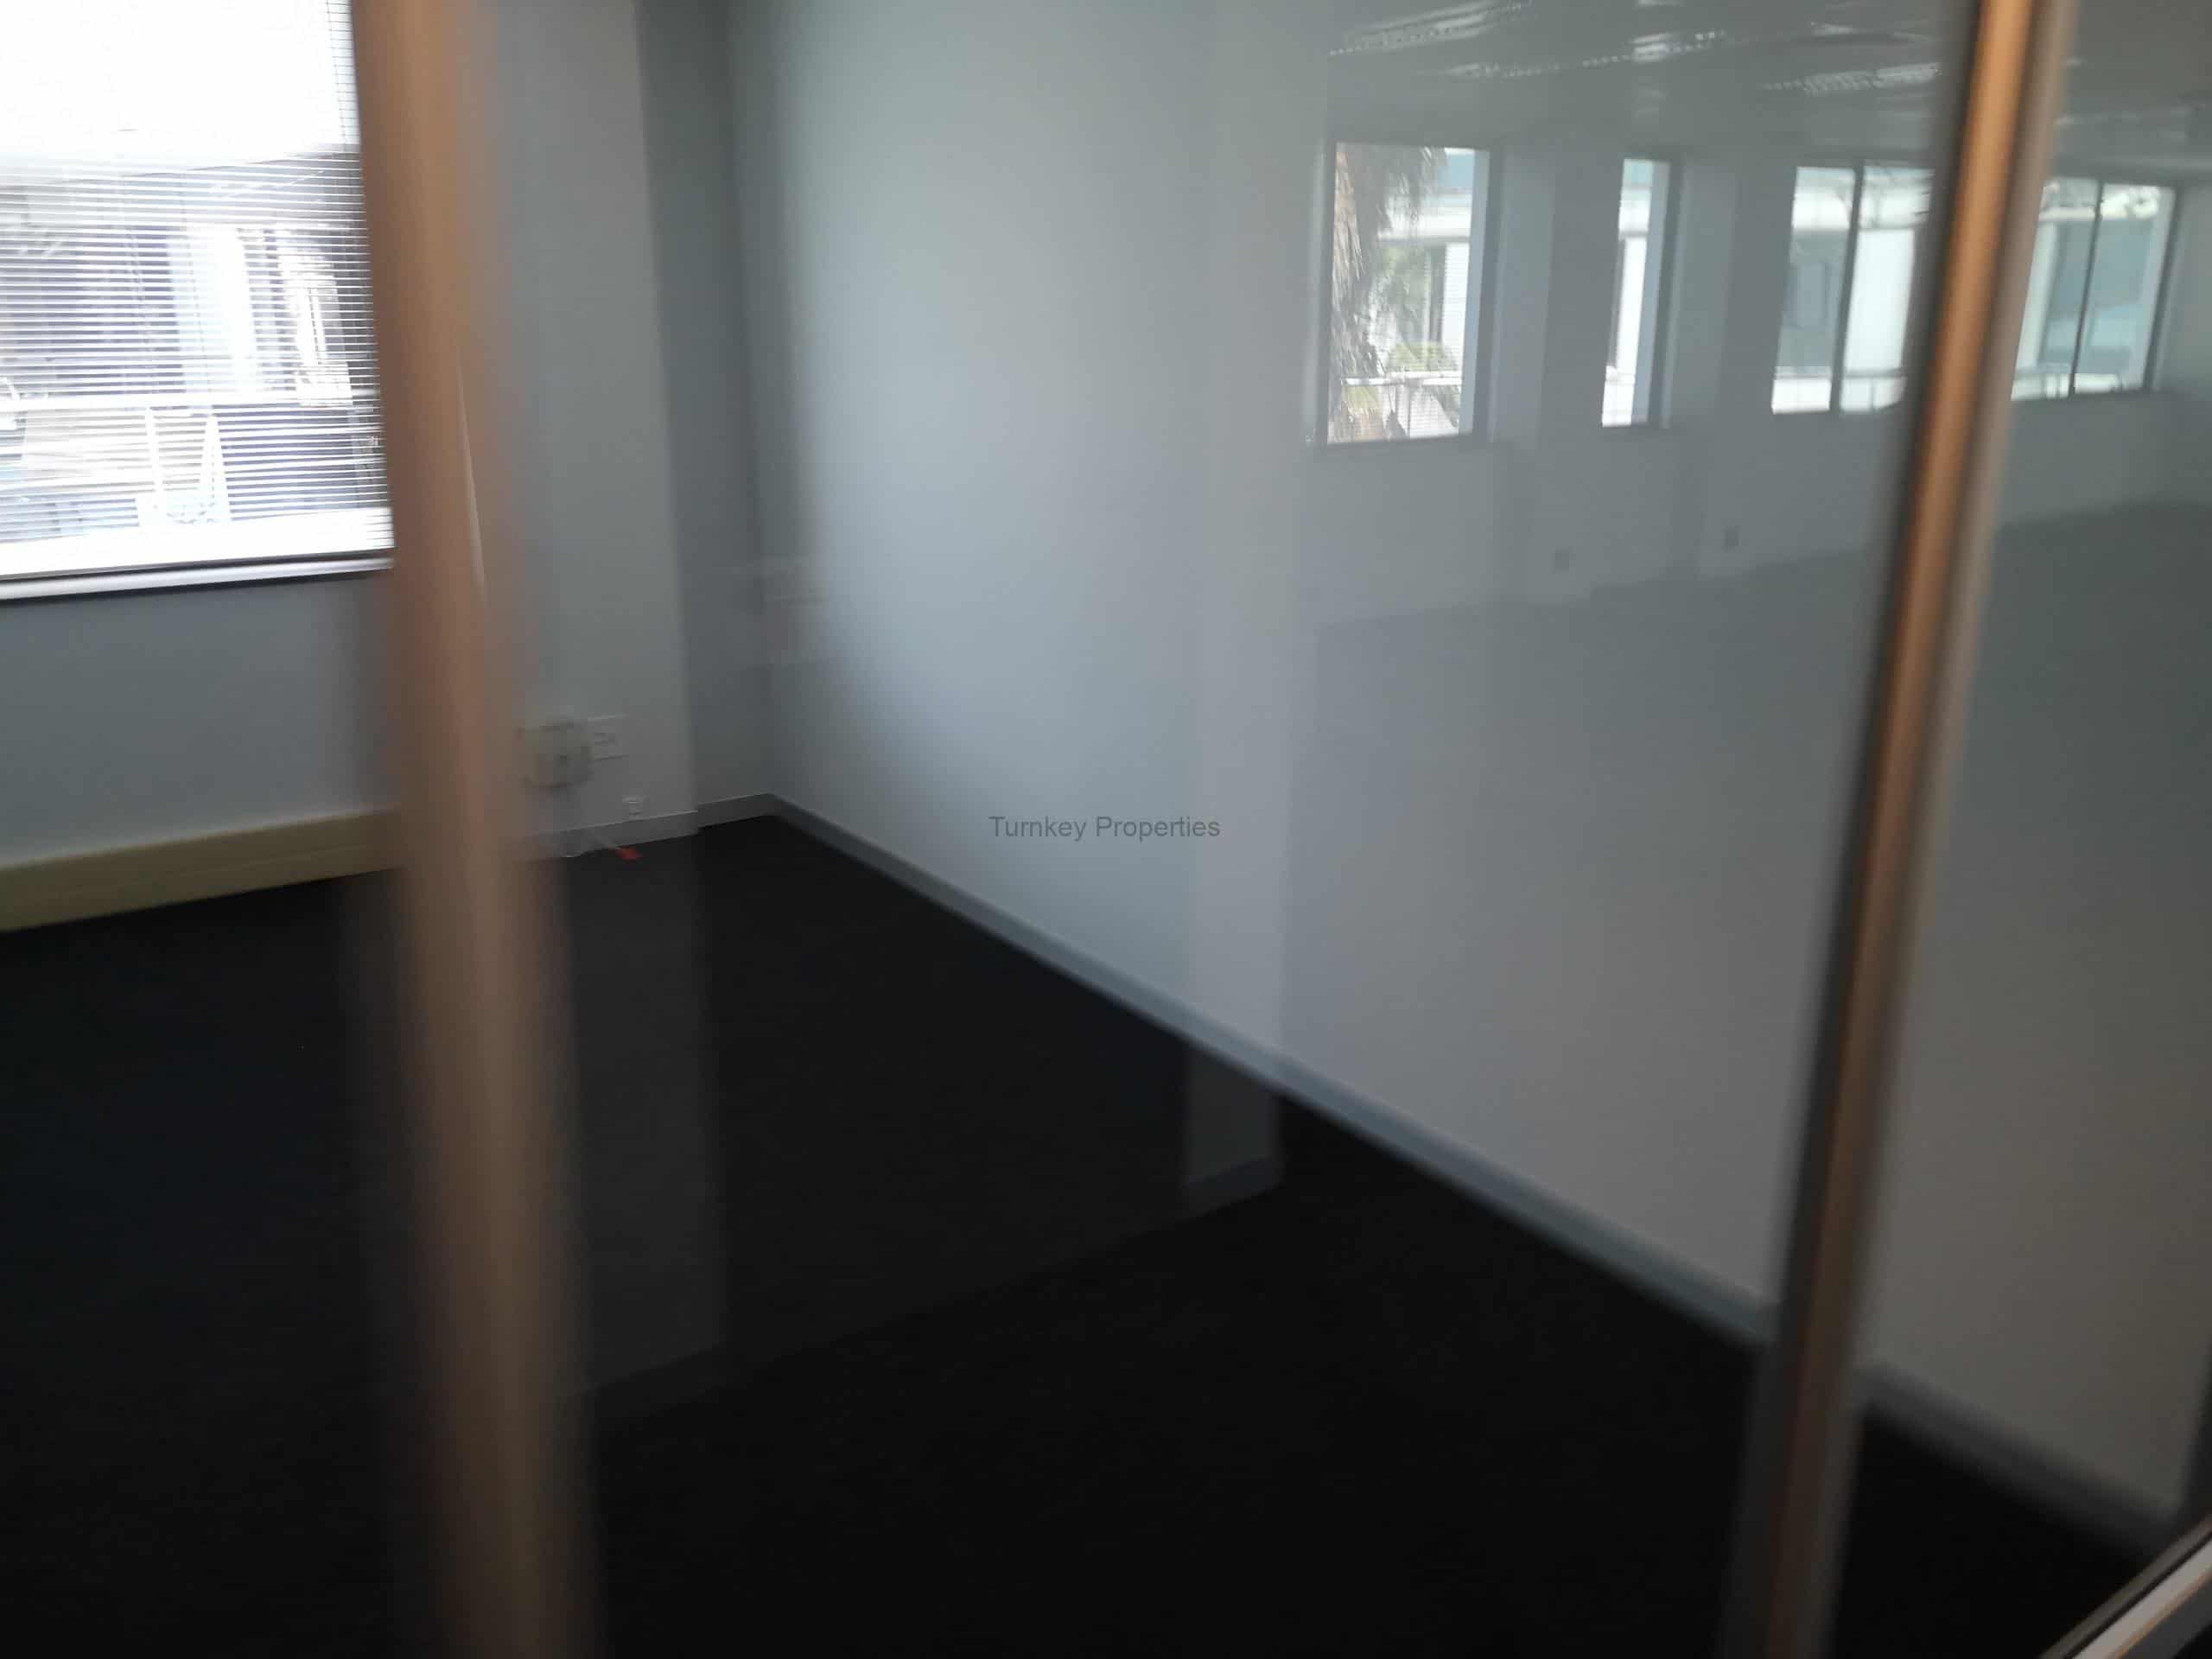 1519 m² Office Space to Rent Rosebank Grosvenor Corner